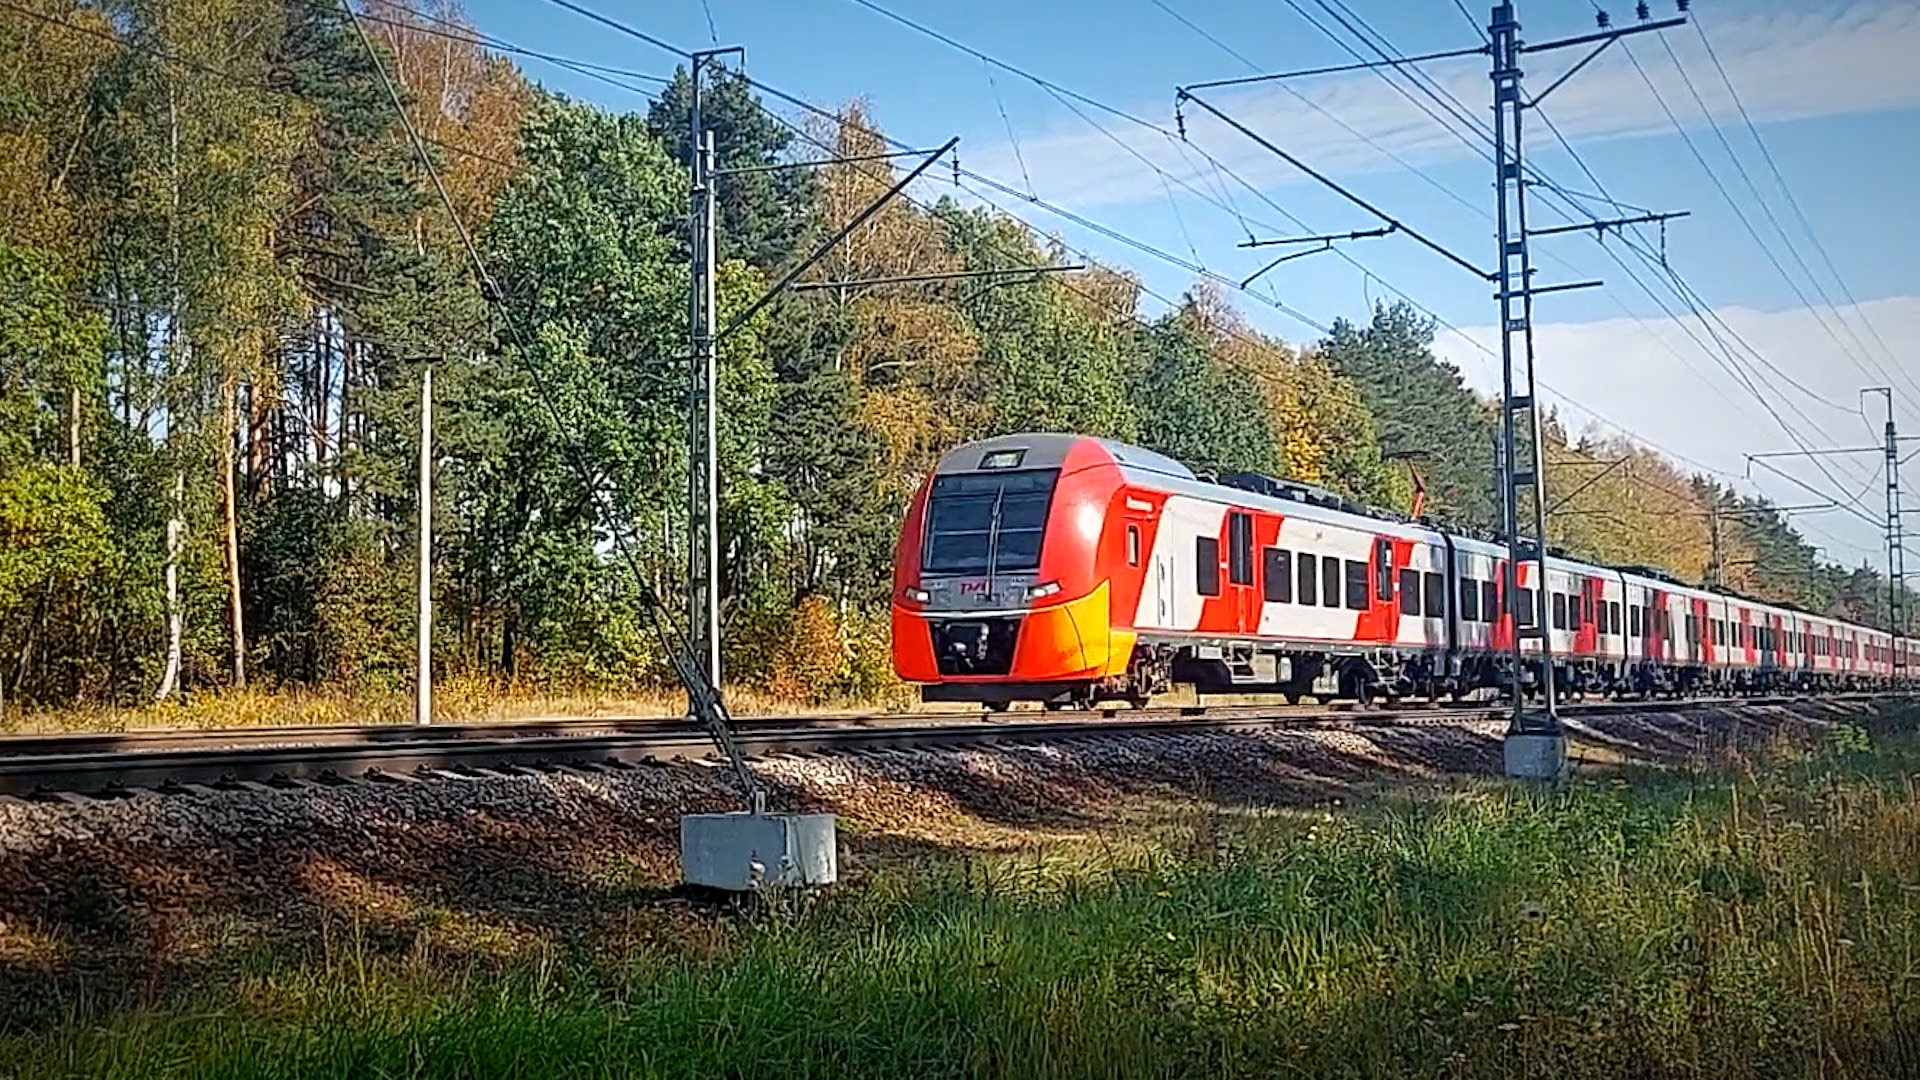 Пассажирские поезда осенью / Железнодорожный микс, Москва и Московская область